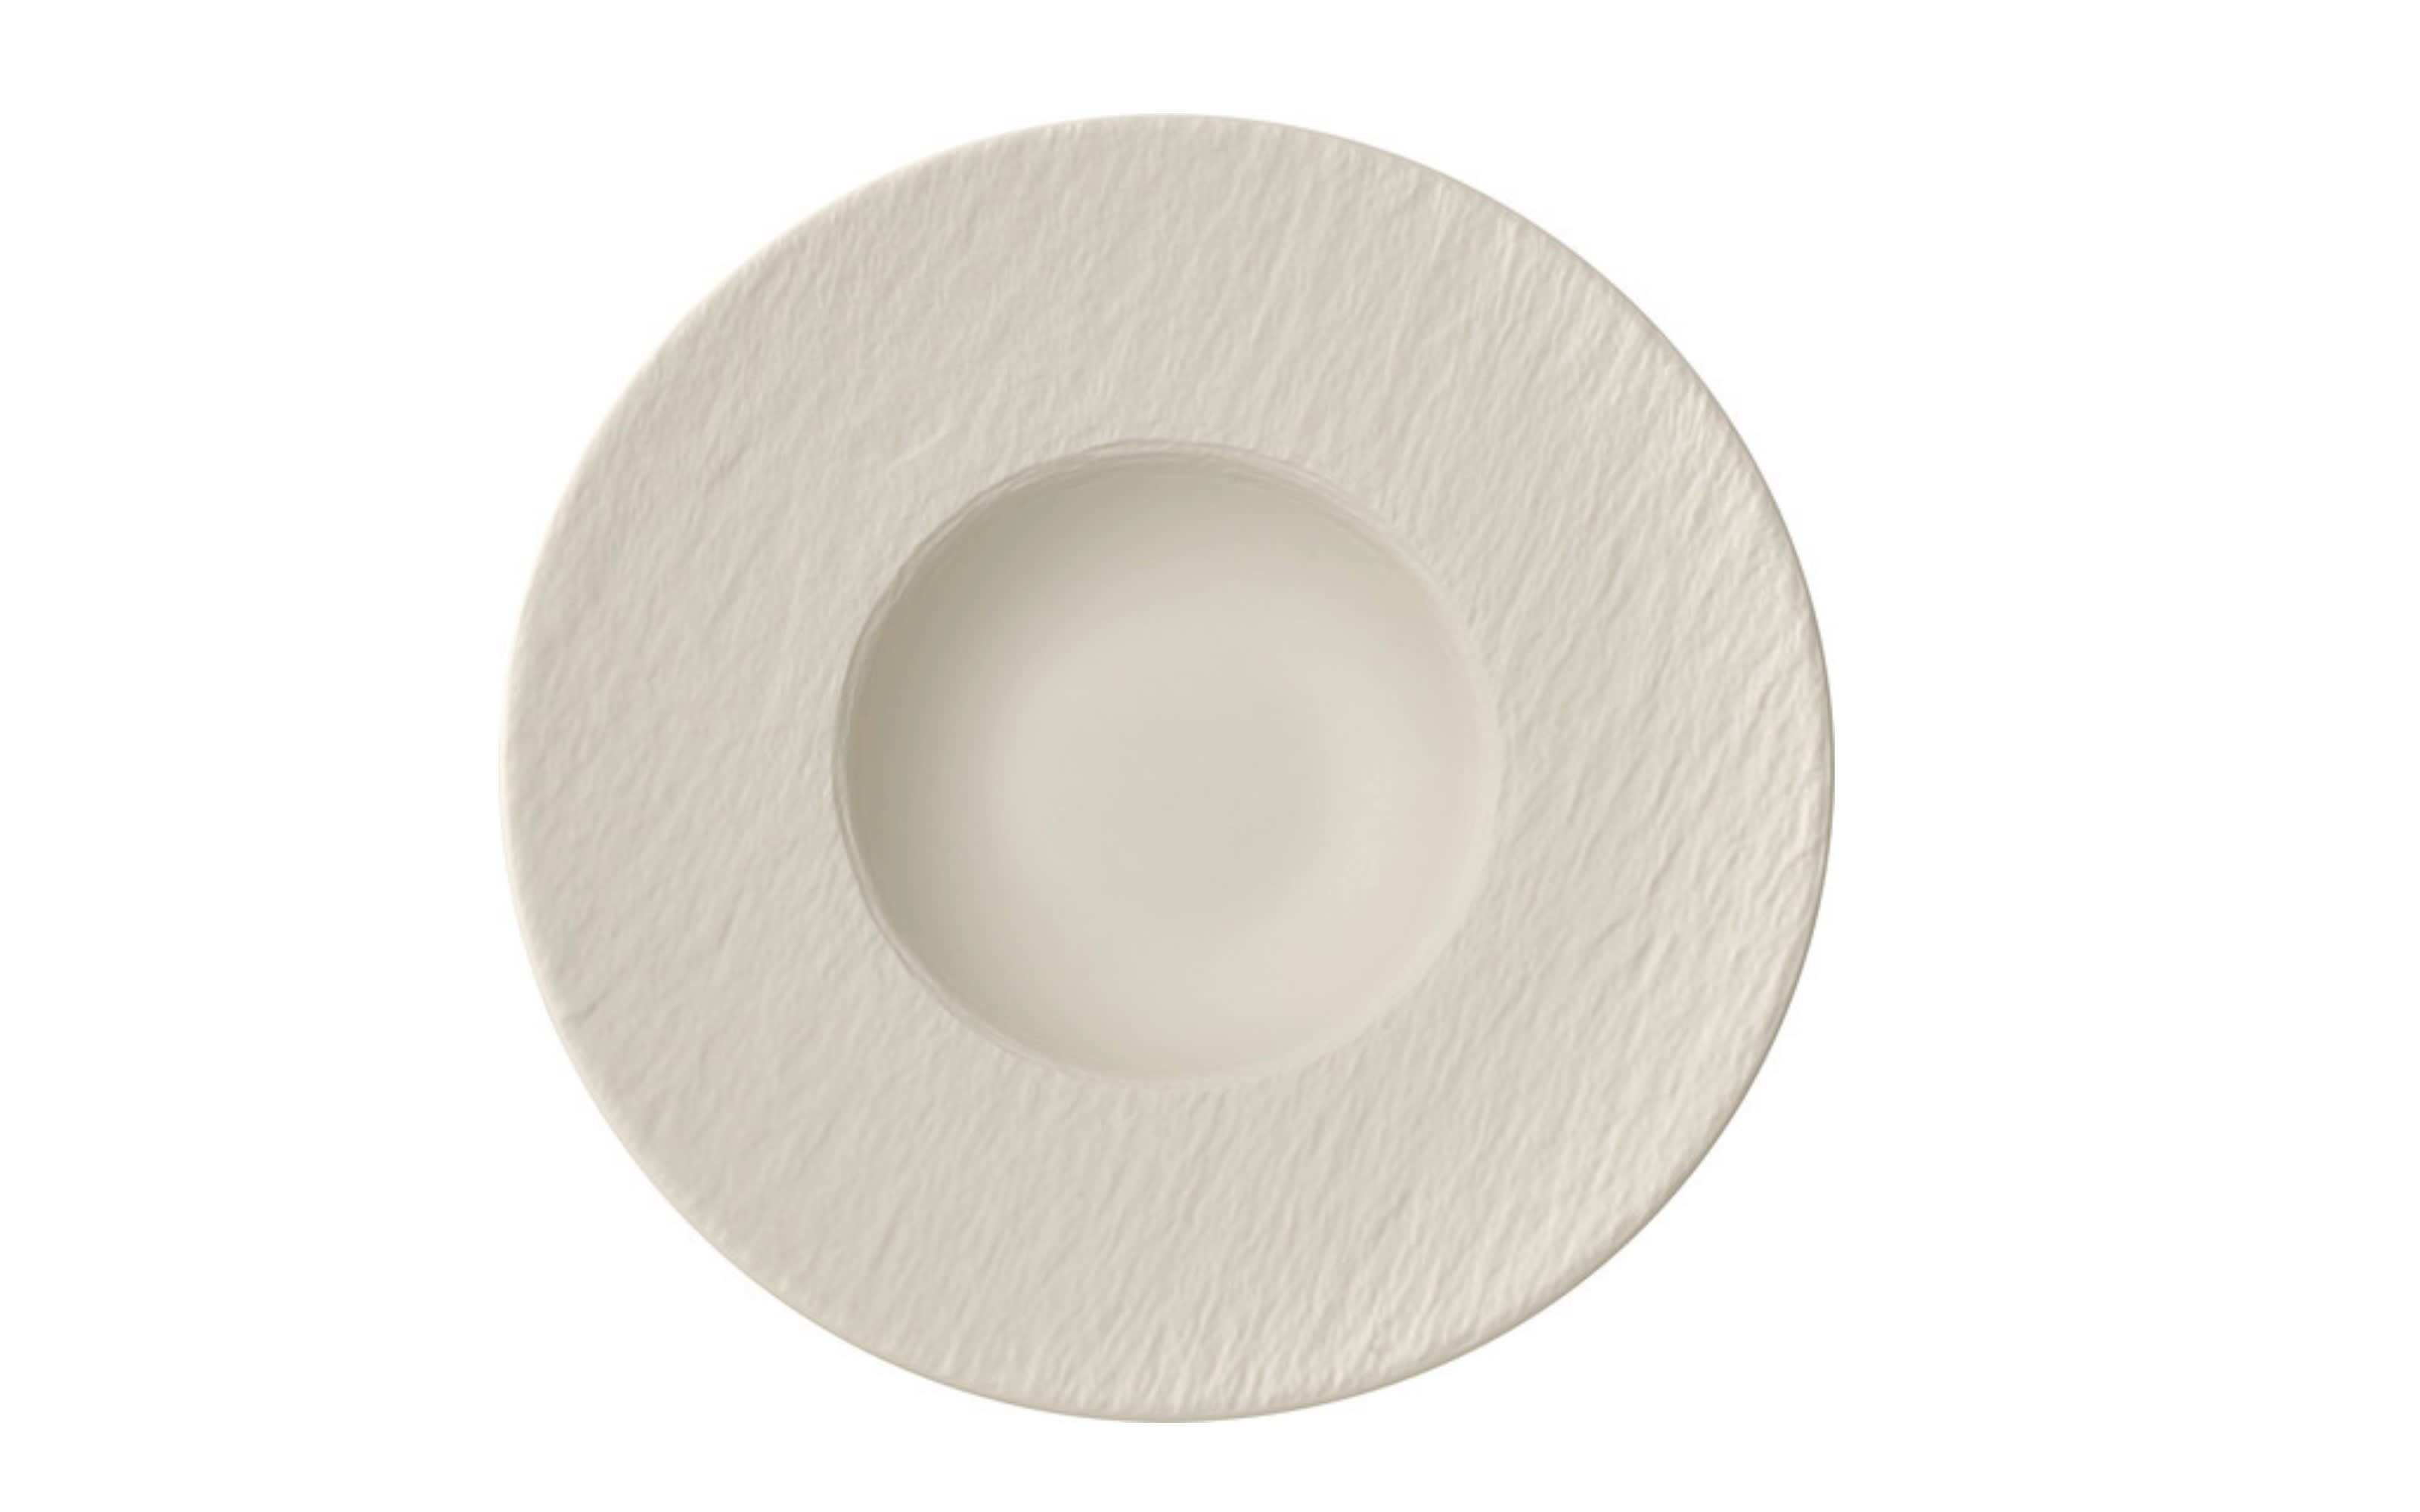 Pastateller Manufacture Rock Blanc in weiß, 28 cm